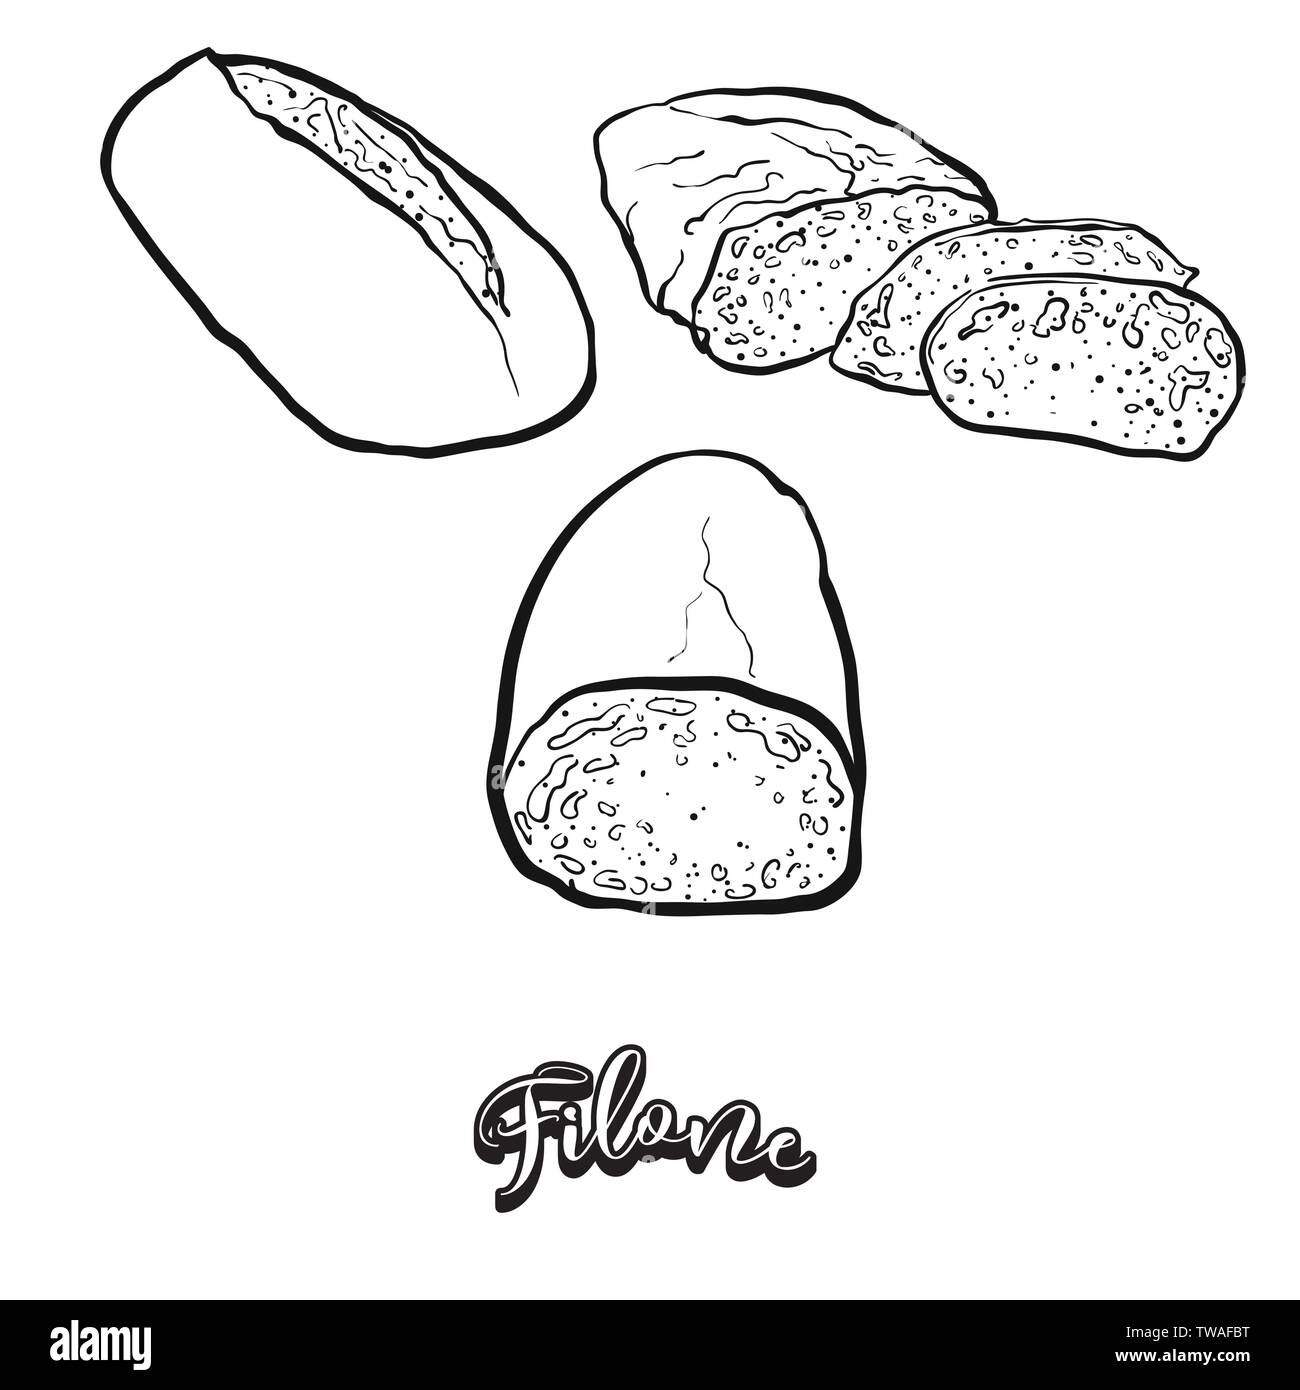 Filone essen Skizze auf dem Schwarzen Brett. Vektor Zeichnung von GESÄUERTEN, in der Regel in Italien bekannt. Essen Abbildung Serie. Stock Vektor